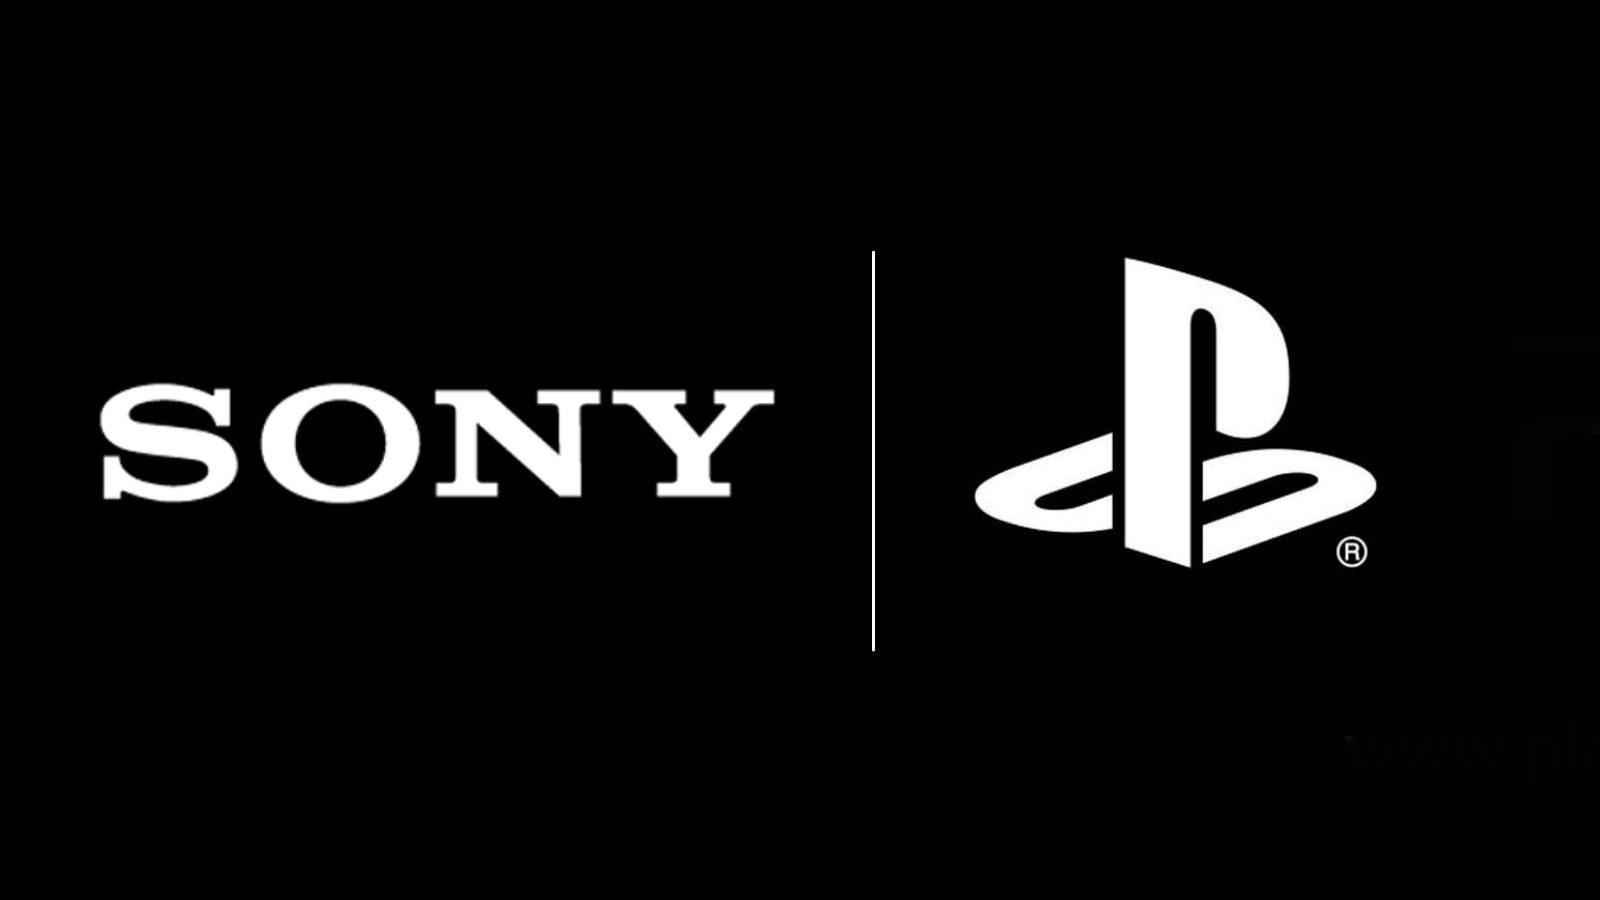 Sony PlayStation logos